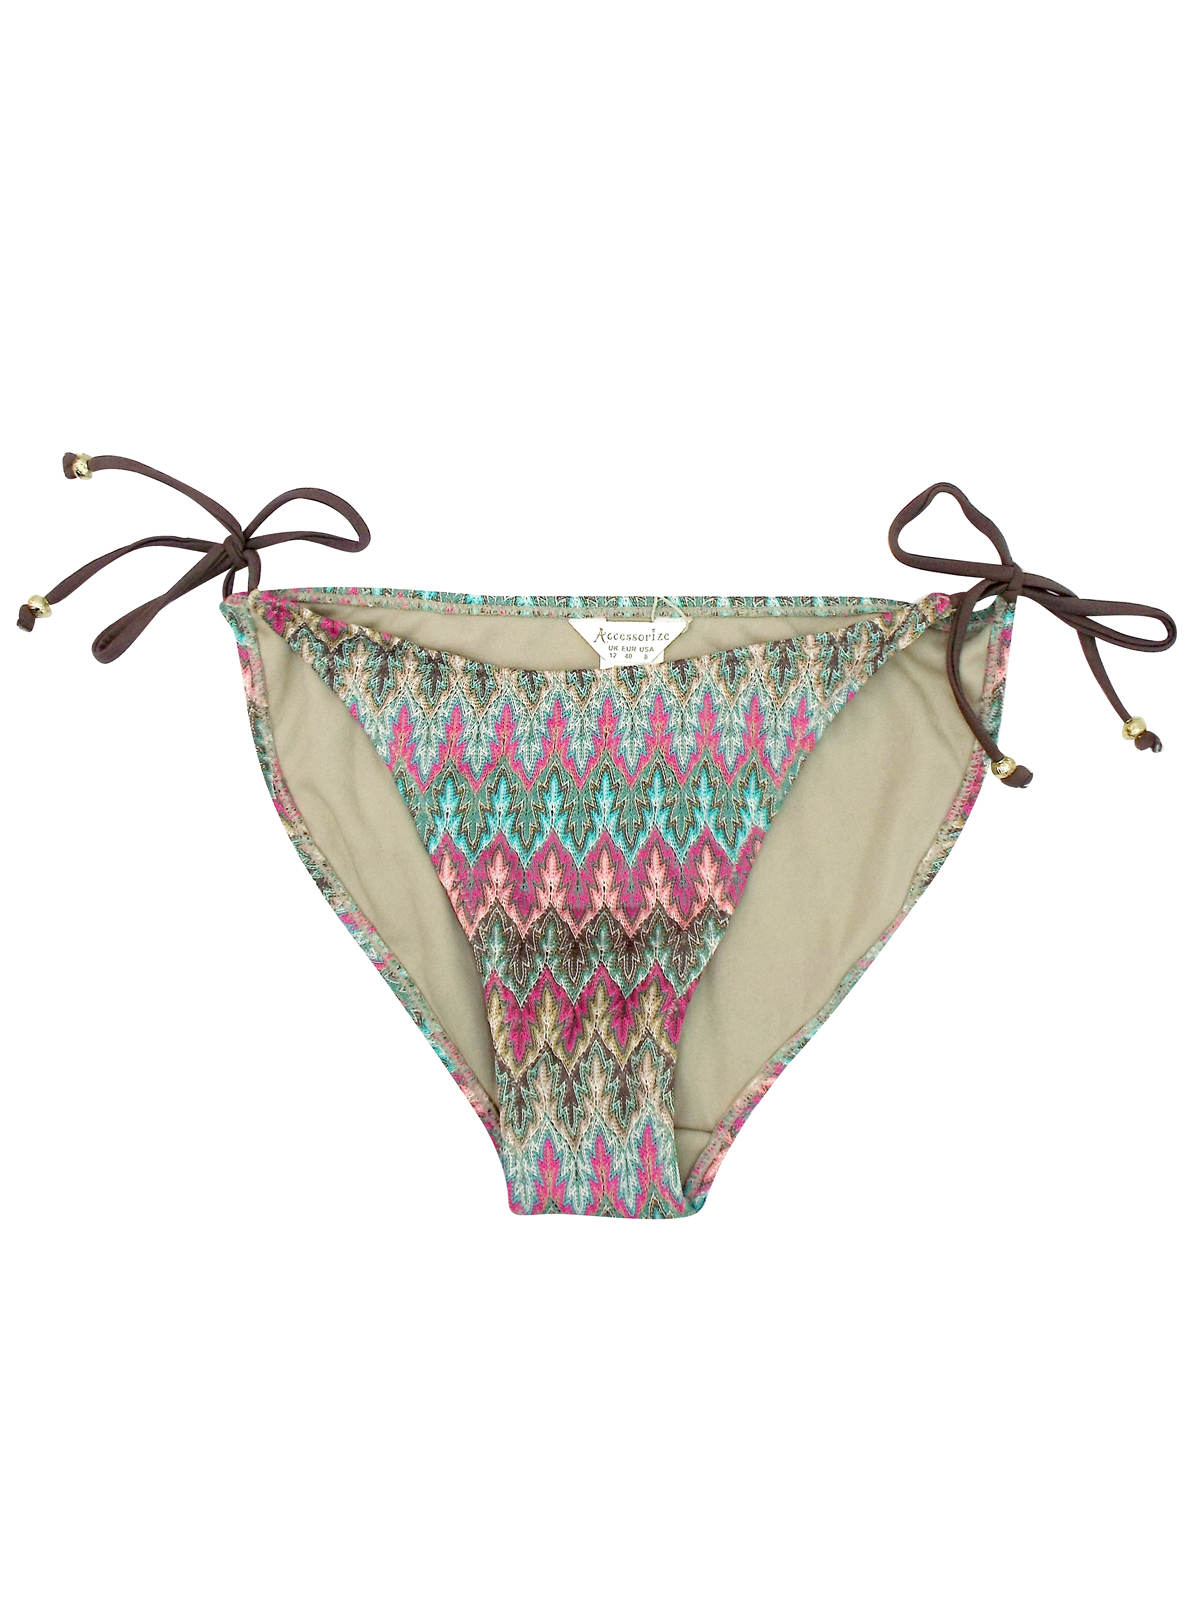 Accesorize GREEN Crochet Knit Tie Side Bikini Bottoms - Size 12 to 18